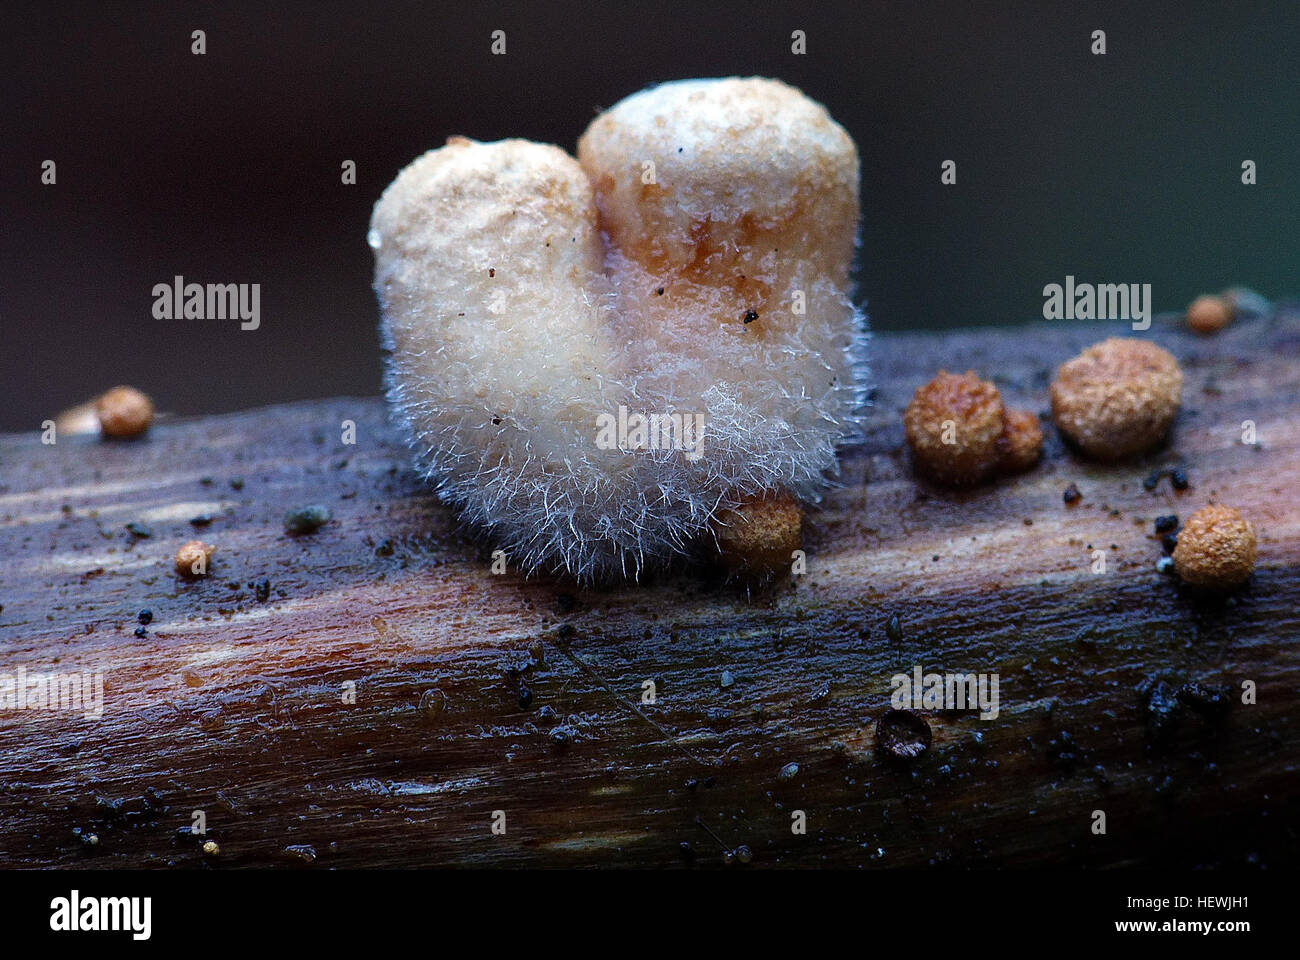 Birdsnest funghi questi sono molto specializzati per la dispersione delle loro spore. Nidula candida (lanosi birdsnest funghi) sono molto piccole strutture a tazza che somigliano a un piccolo nido coperto da un sottile pelle o coperchio. Quando questo coperchio si piega, è possibile vedere cose che sembrano uova, ma sono in realtà poco fasci (peridioles) di spore compressa. Questi sono coperti con una sostanza appiccicosa in modo tale che quando essi sono schizzi fuori da gocce di pioggia, bastone per la suface atterrano sul. Il peloso (lanosi) a copertura di questi funghi lo rende facilmente distinguibili. Foto Stock